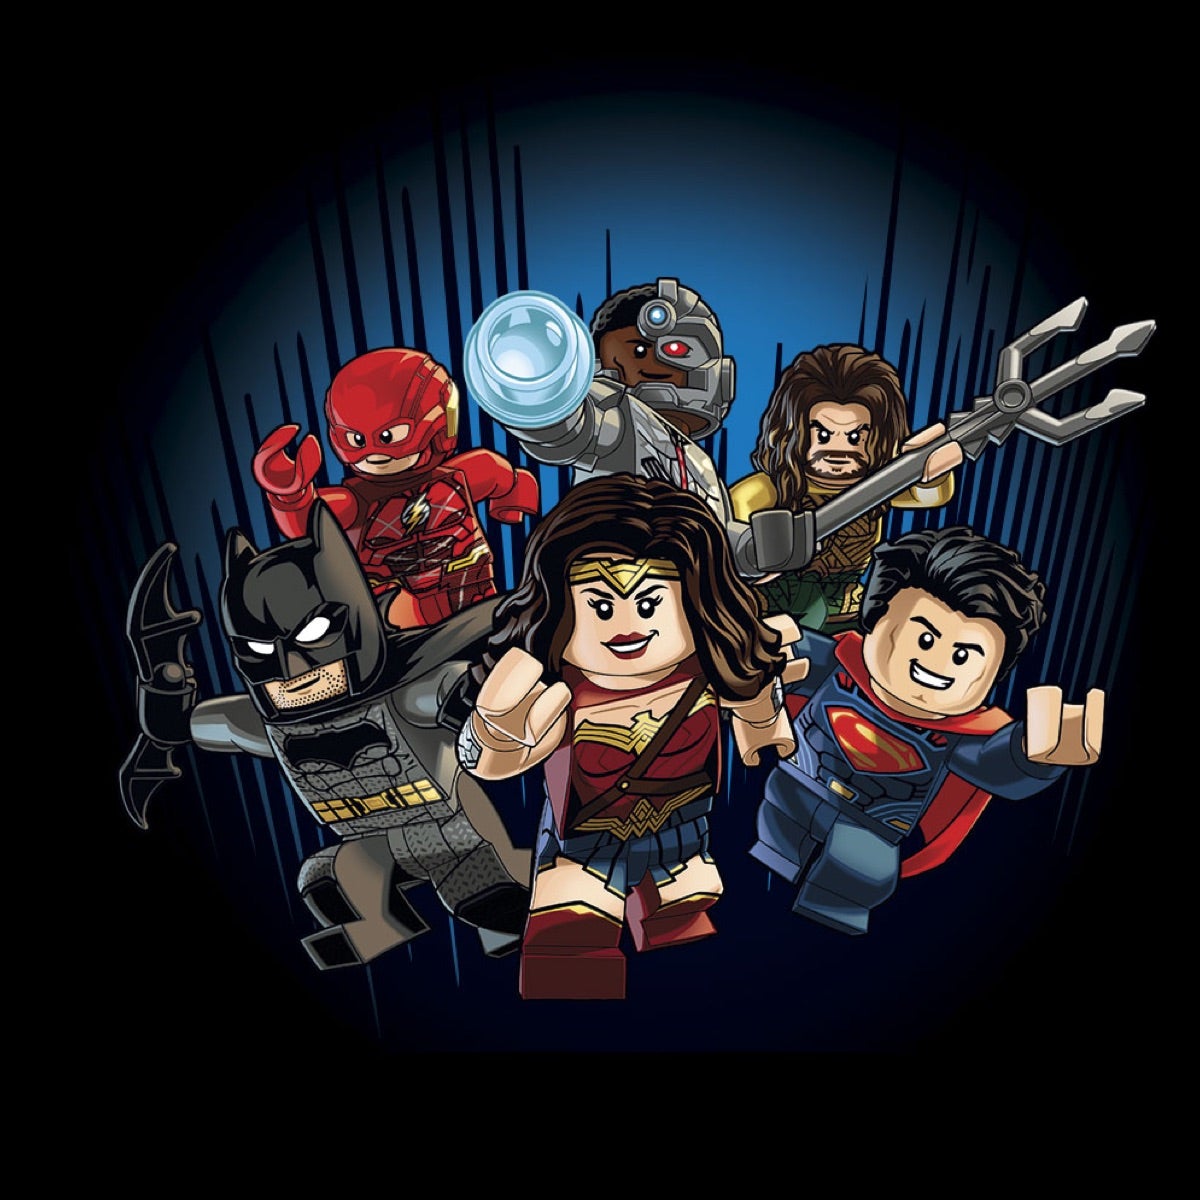 Details about   Blackest Night Superman minifigure DC evil villain TV show Comic toy figure